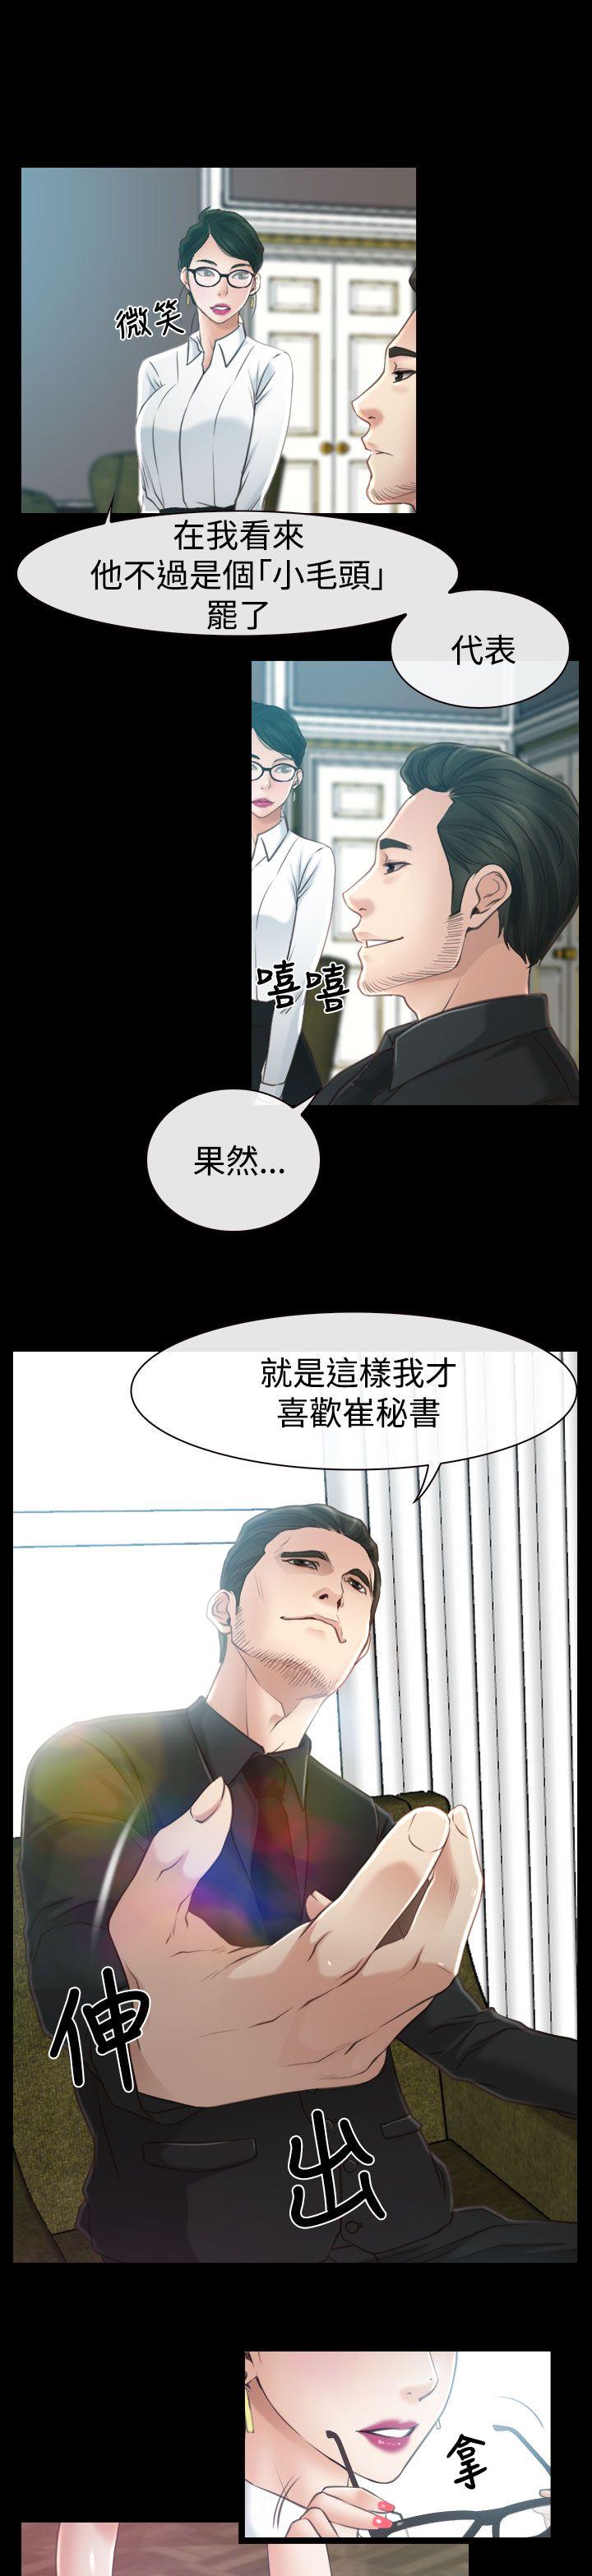 韩国污漫画 猜不透的心 第13话 29